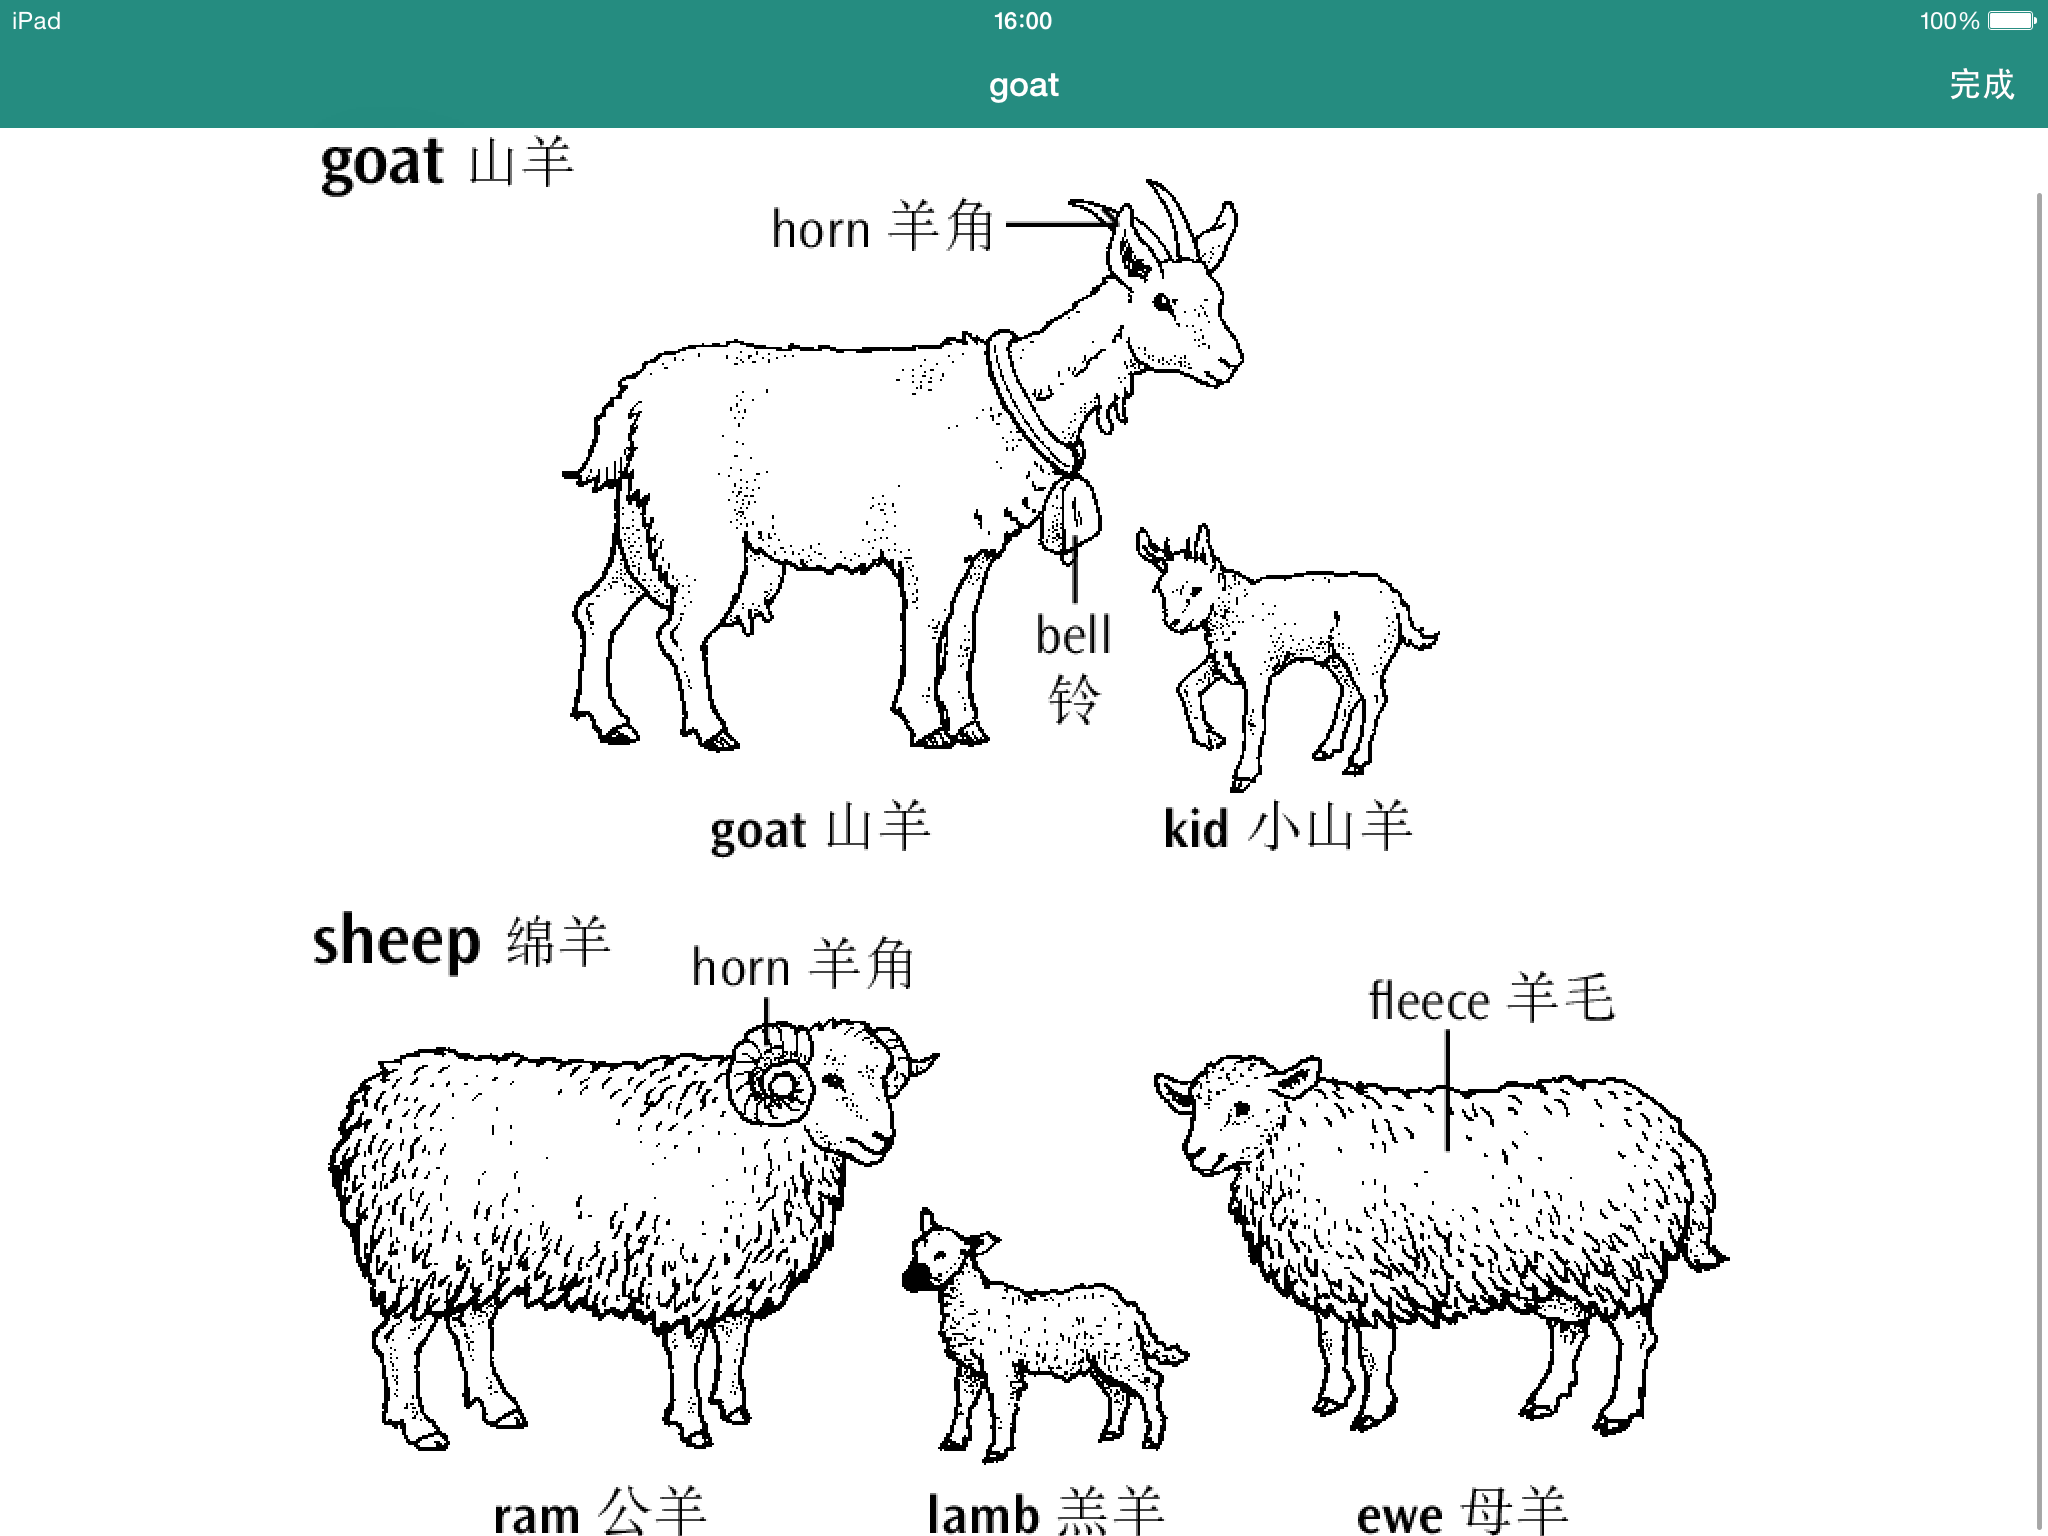 英语中表示羊的词有很多…那要说世界上有很多种羊 sheep goat ram都